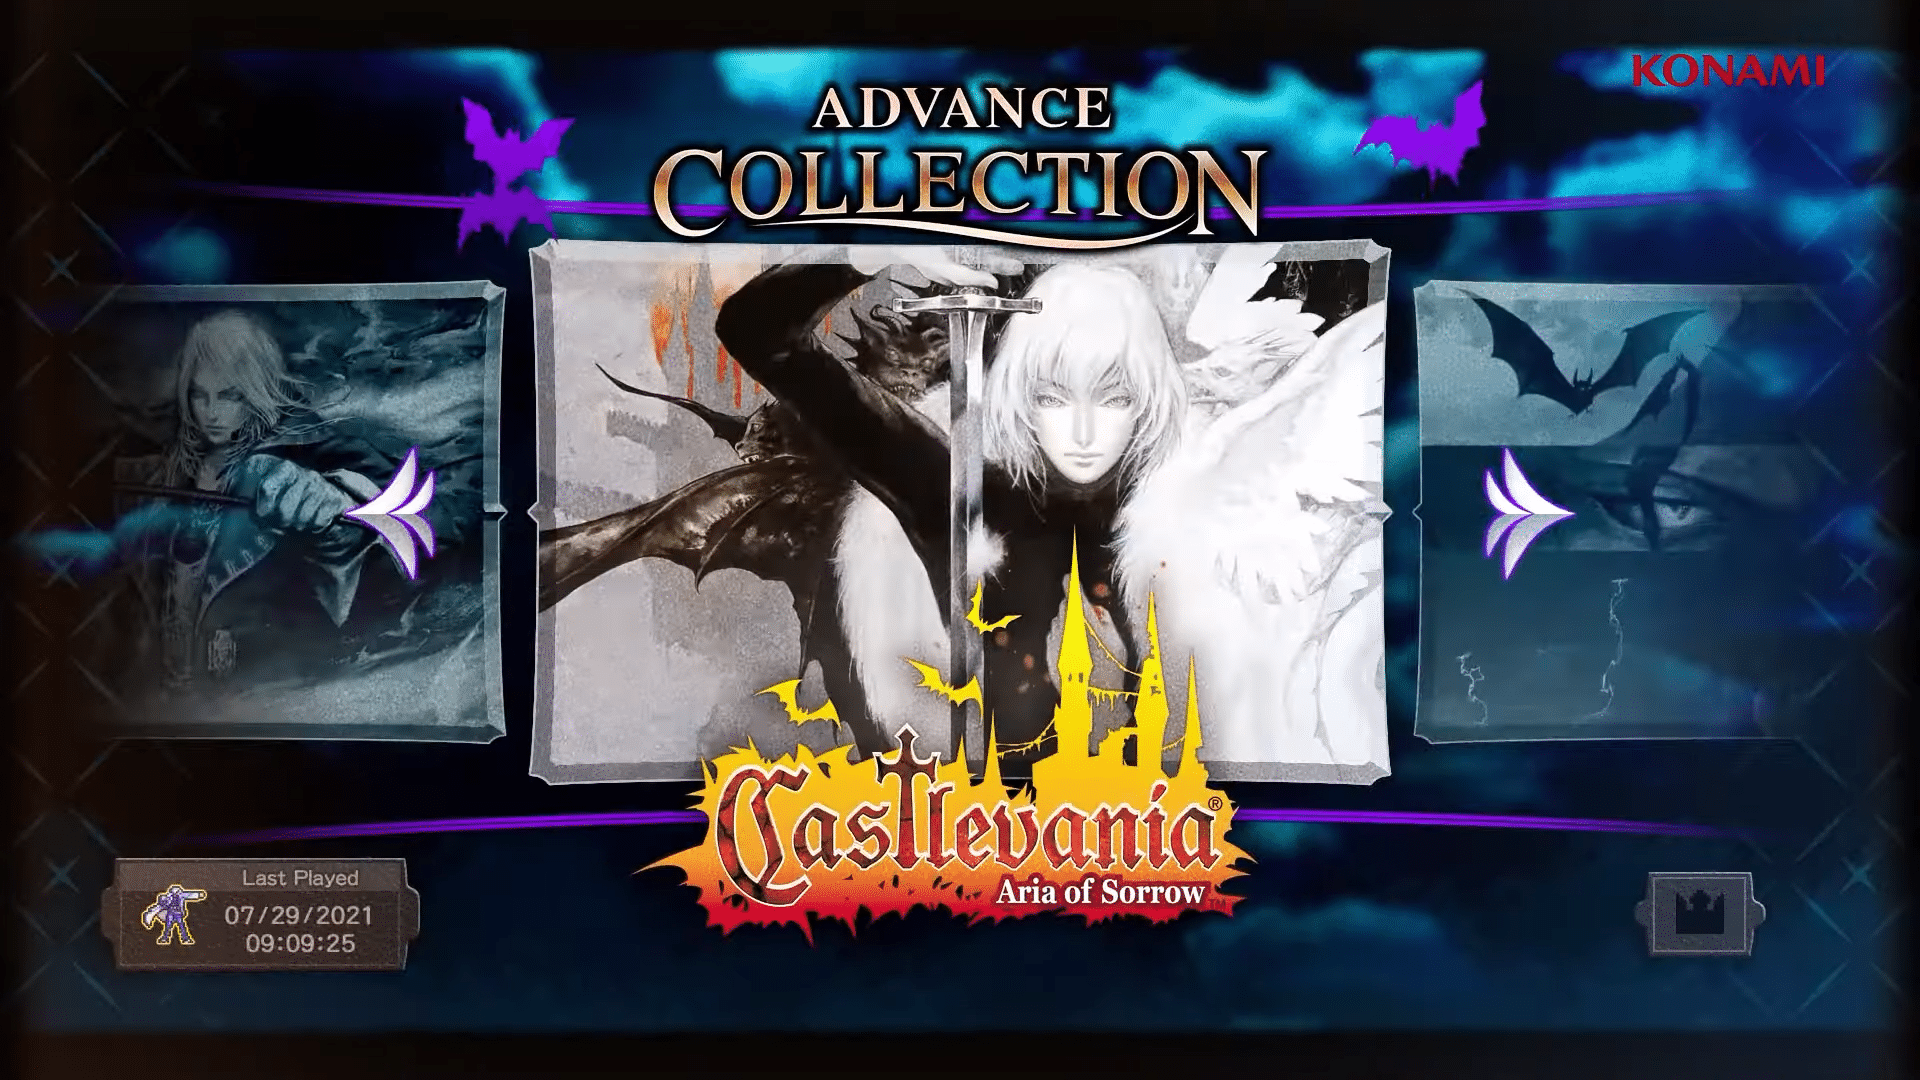 Castlevania collection ps4. Castlevania Aria of Sorrow. Castlevania Aria of Sorrow карта. Castlevania Anniversary collection. Castlevania advance collection